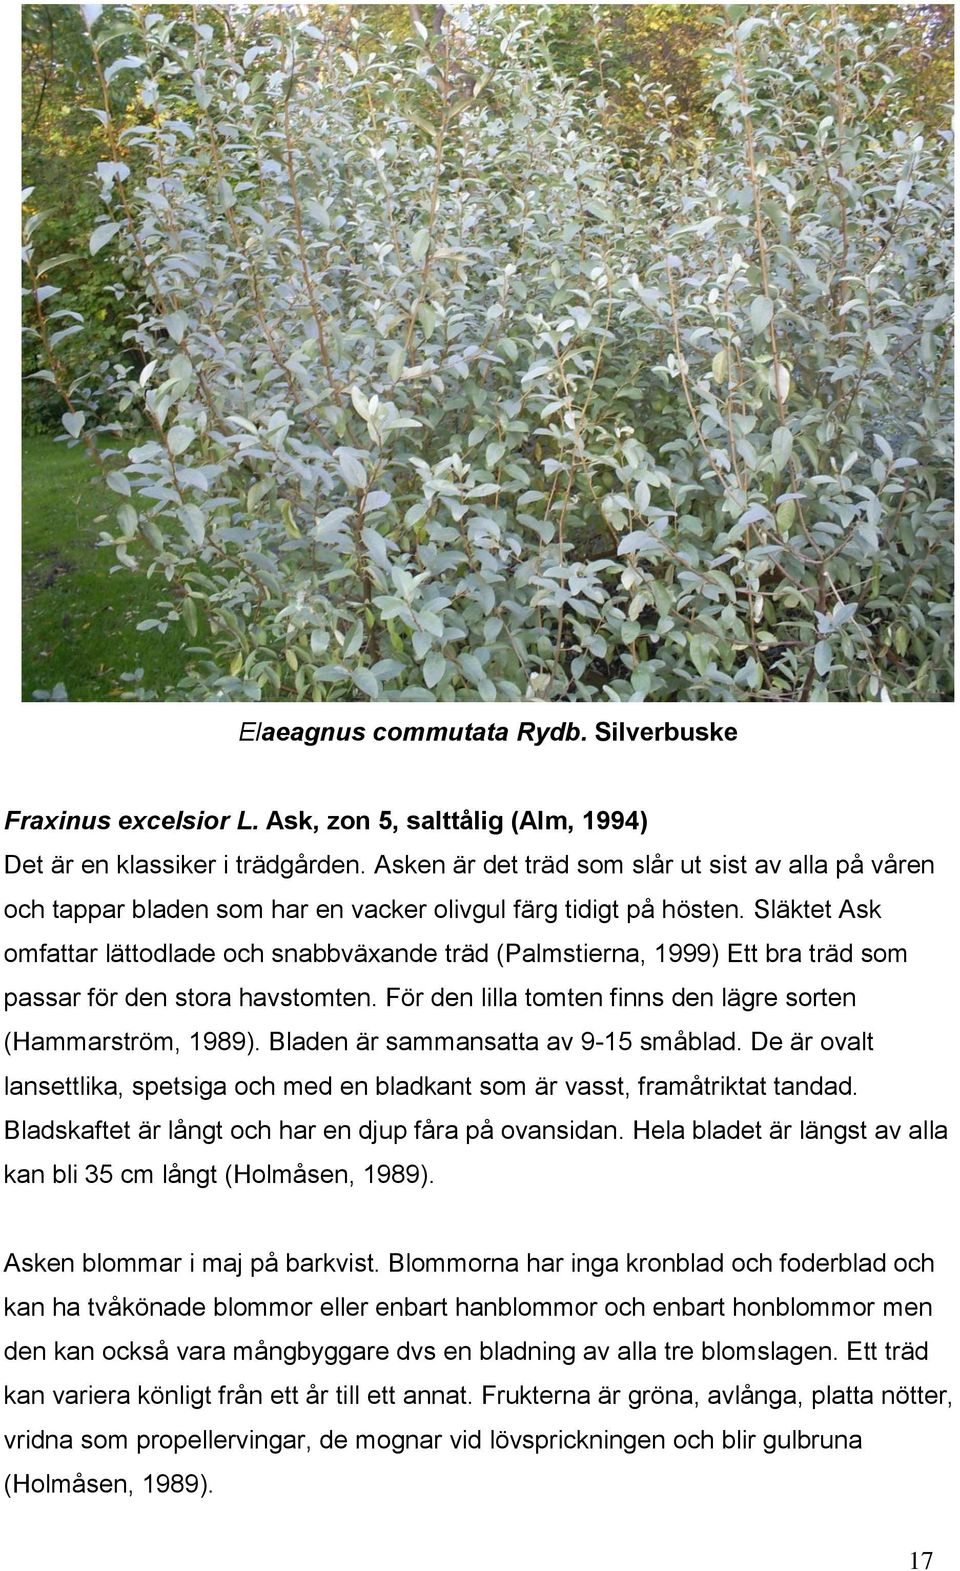 Släktet Ask omfattar lättodlade och snabbväxande träd (Palmstierna, 1999) Ett bra träd som passar för den stora havstomten. För den lilla tomten finns den lägre sorten (Hammarström, 1989).